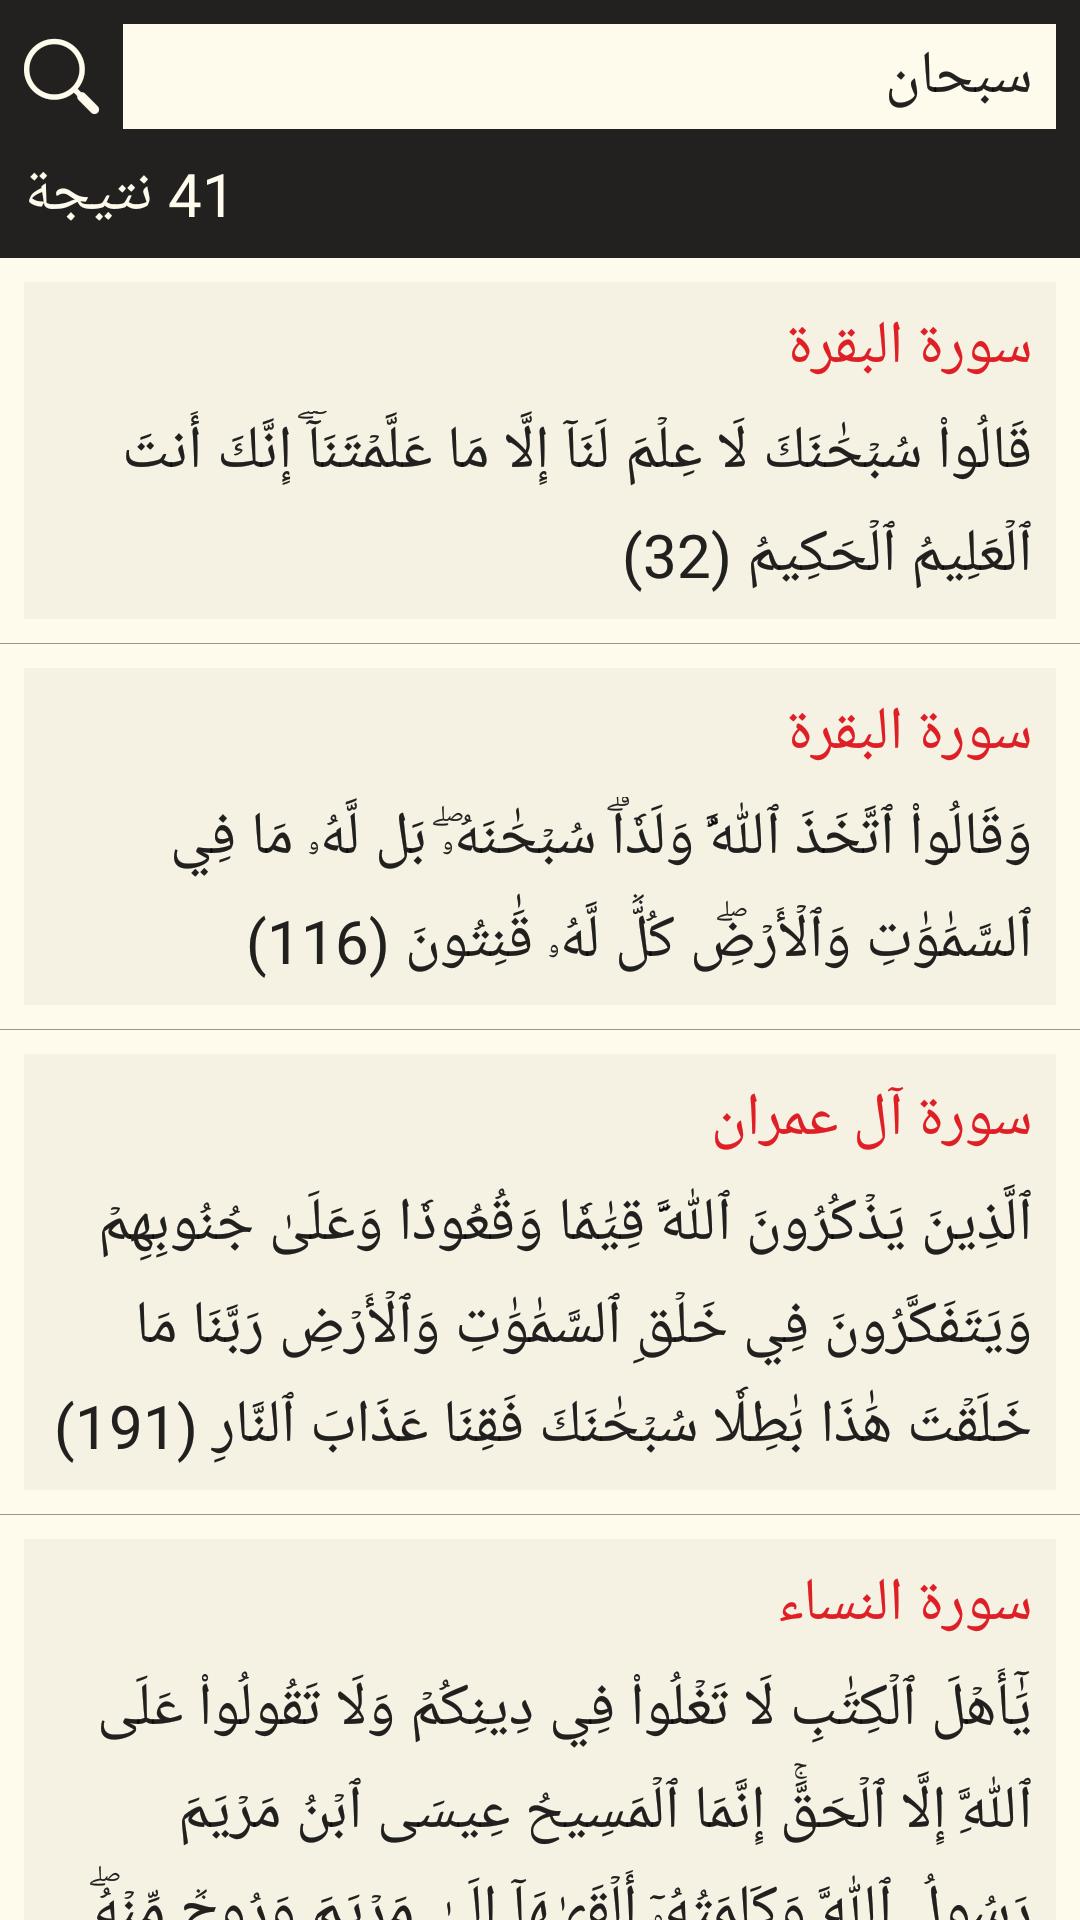 القرآن الكريم مع التفسير وميزات أخرى 6.1 Screenshot 7